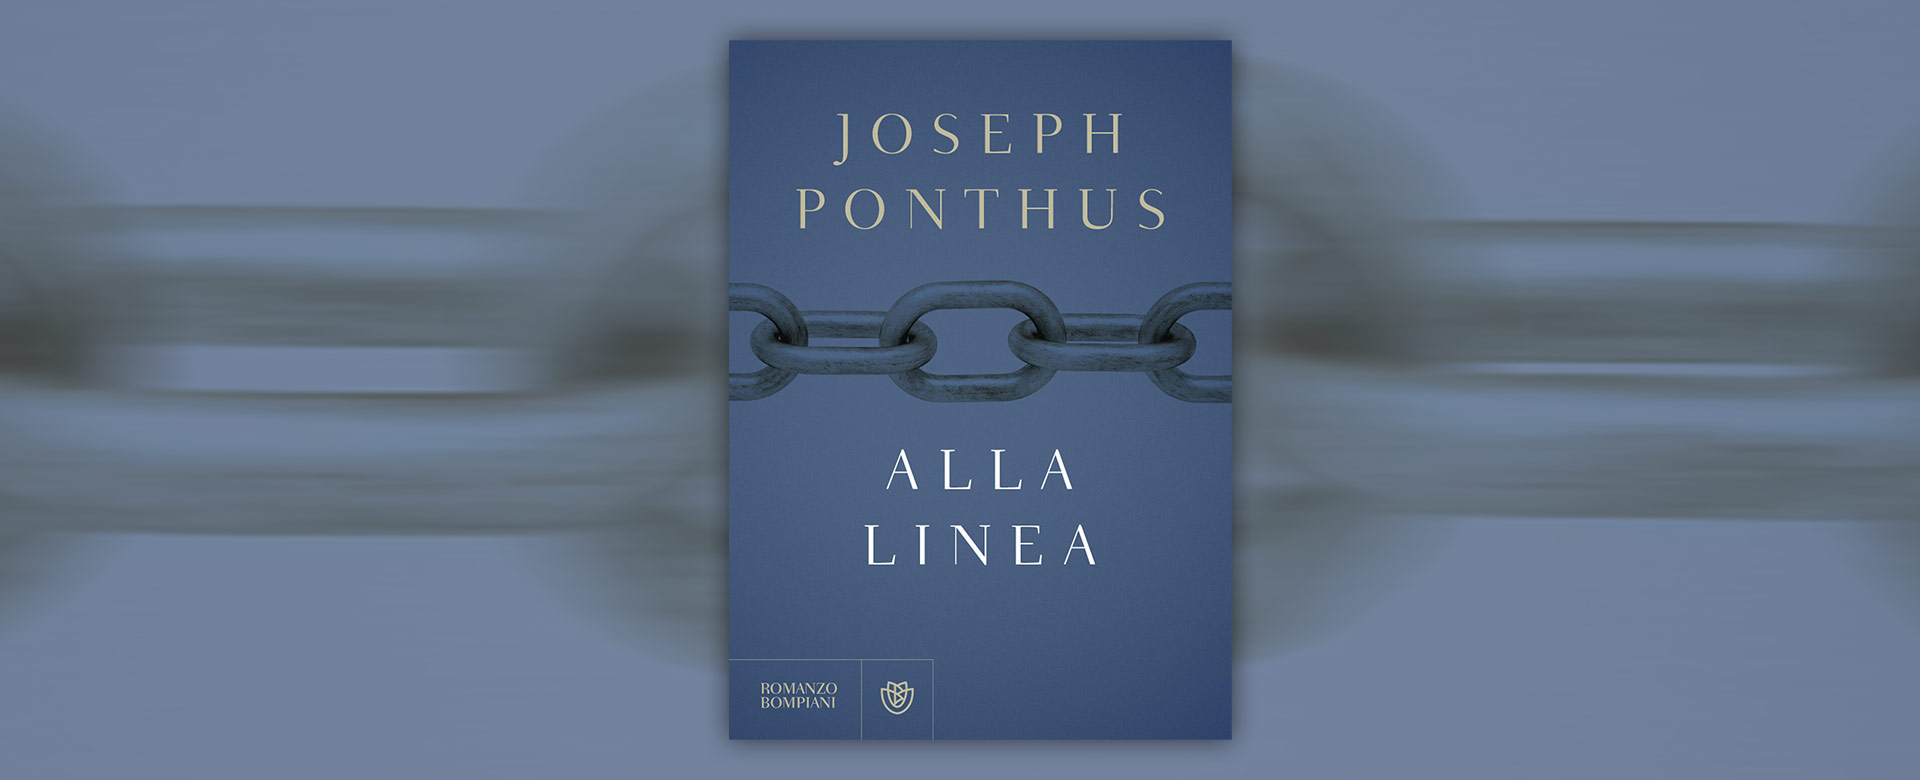 Alla linea libro Joseph Ponthus